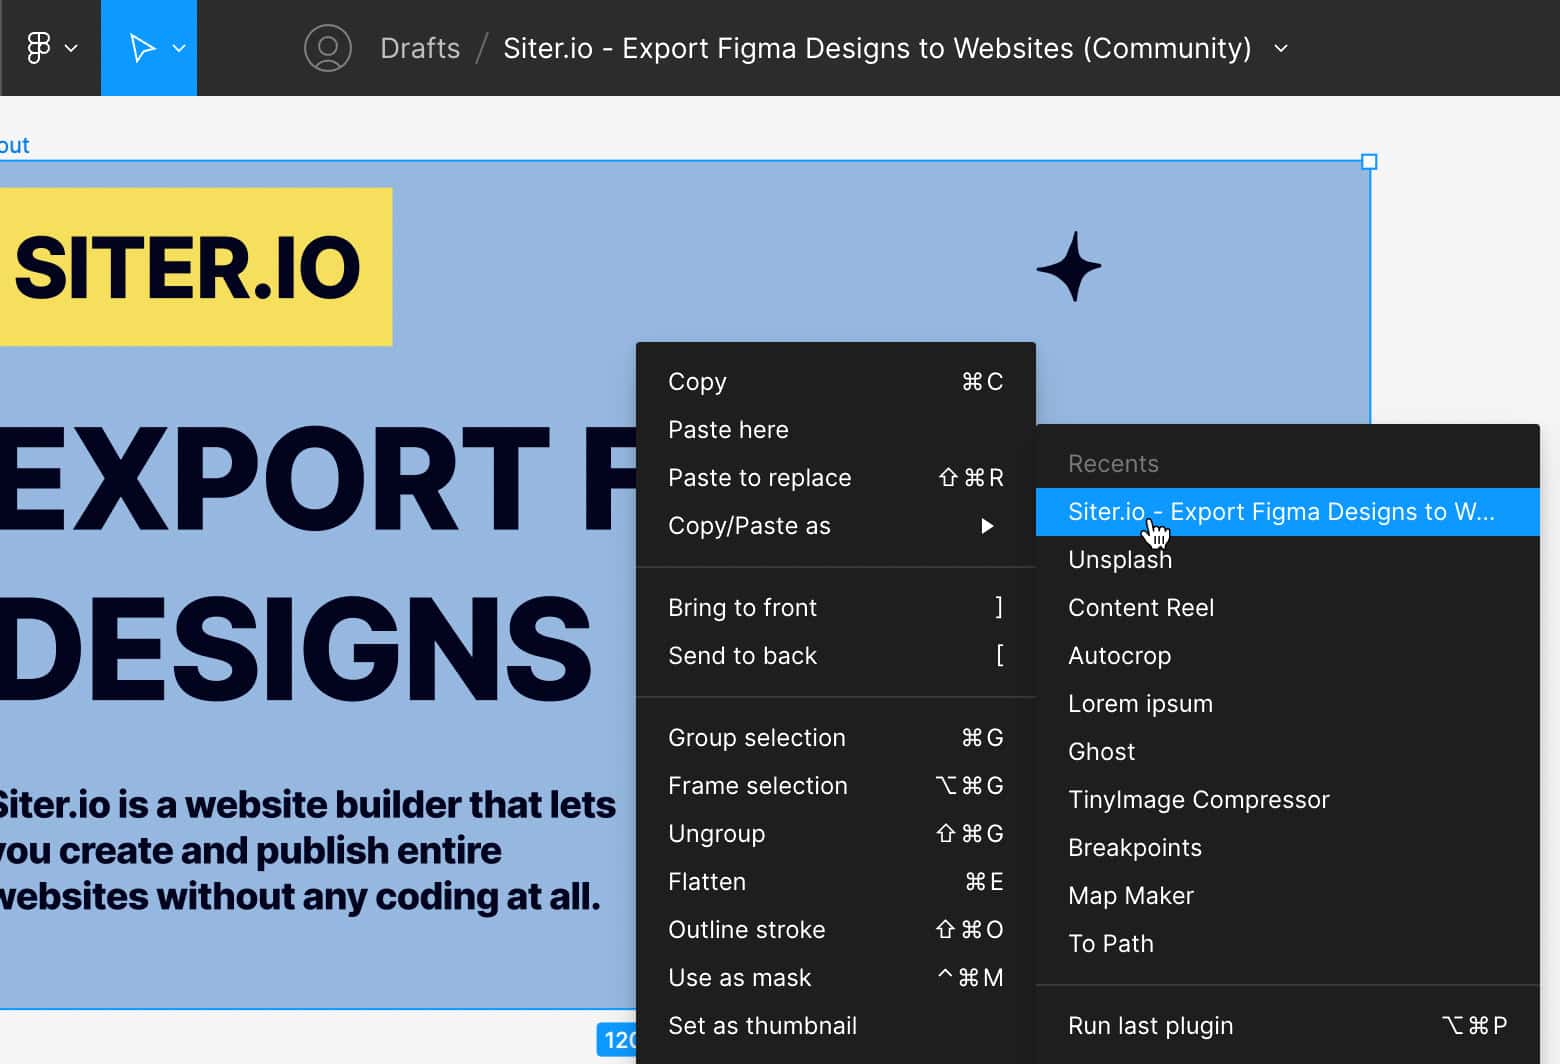 Export Figma Designs to Websites